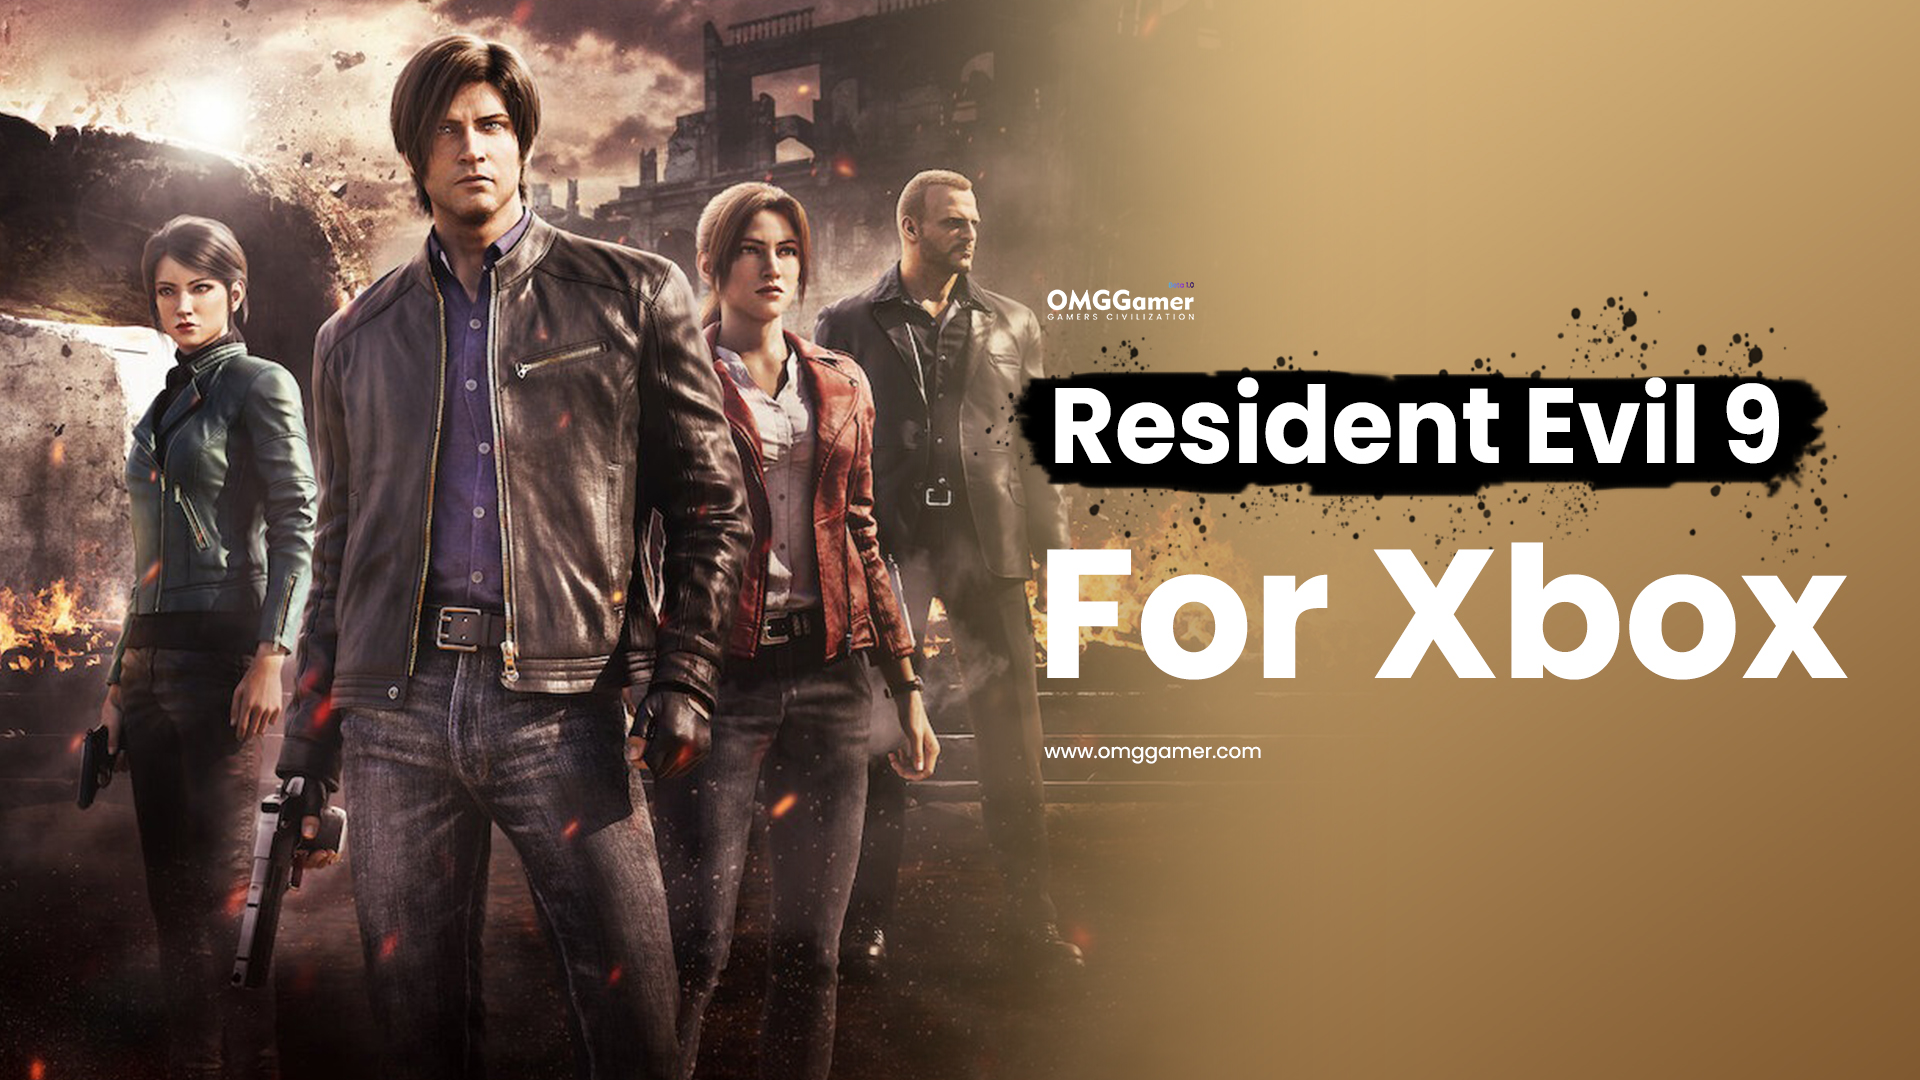 Resident Evil 9 for Xbox